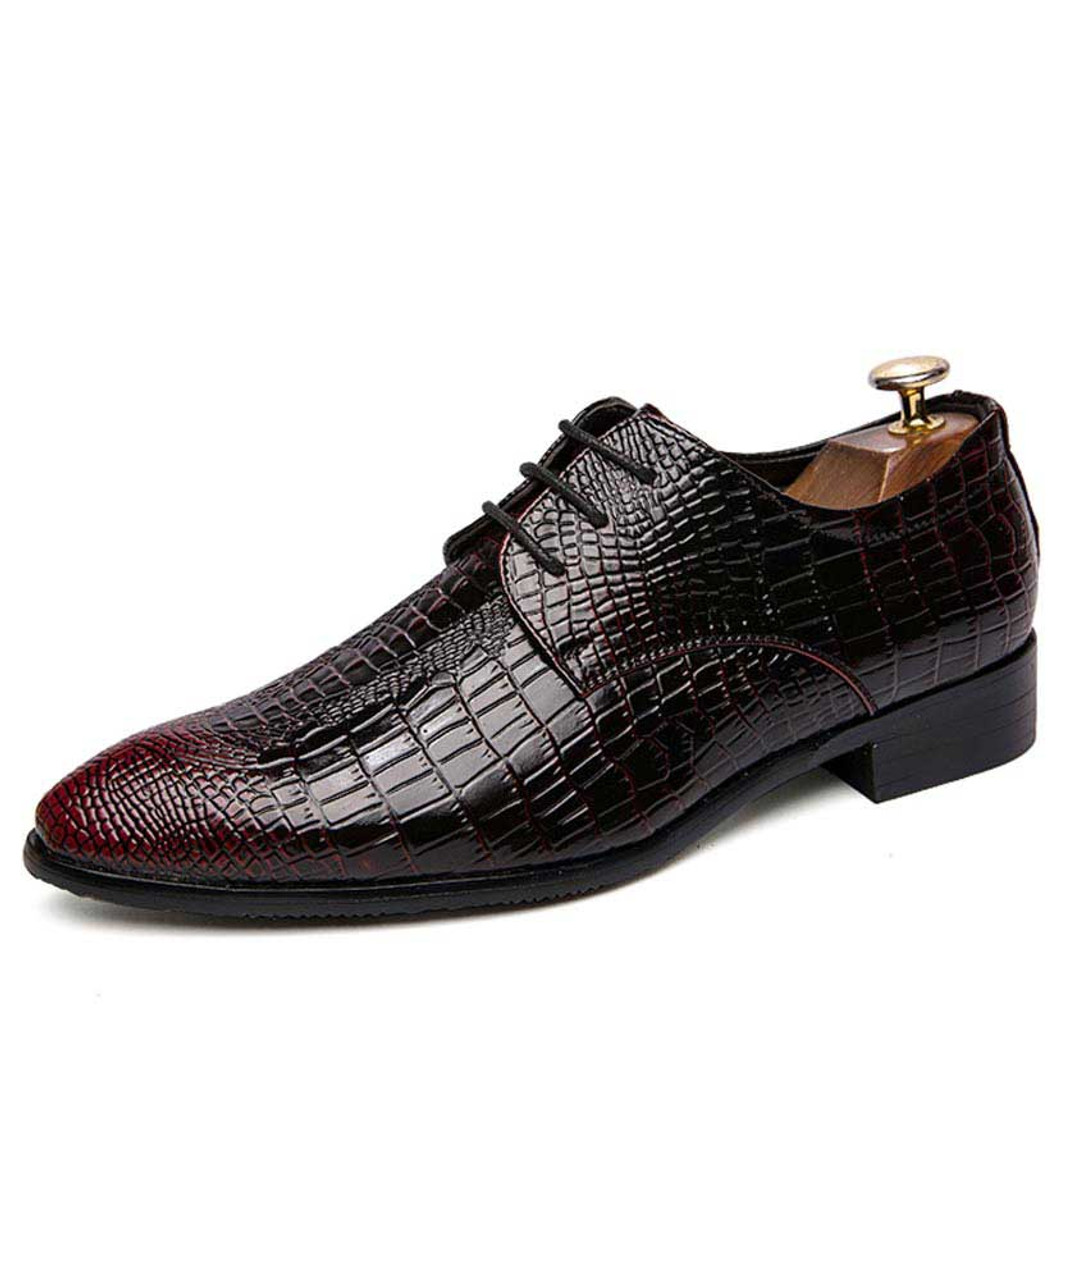 Black red crocodile skin pattern leather derby dress shoe